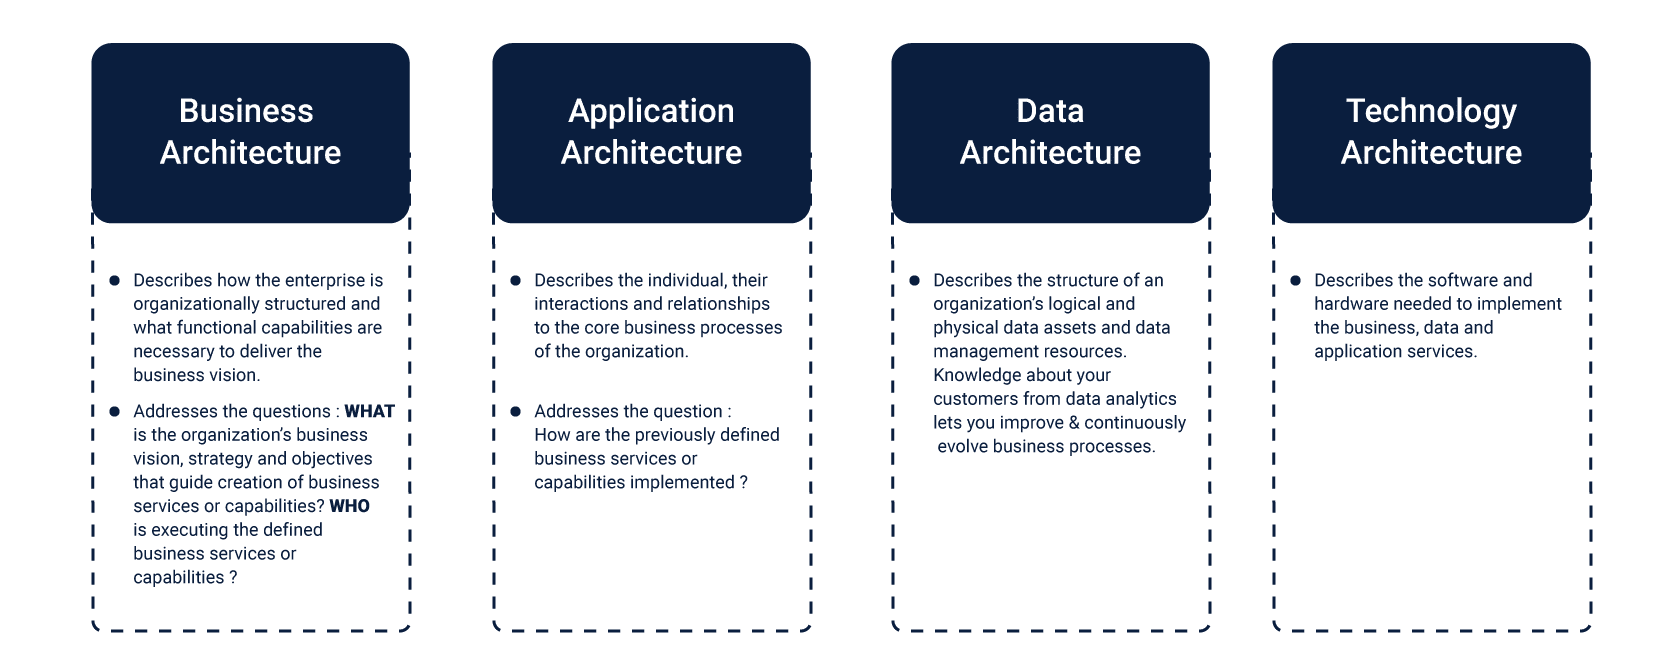 Four domains of enterprise architecture